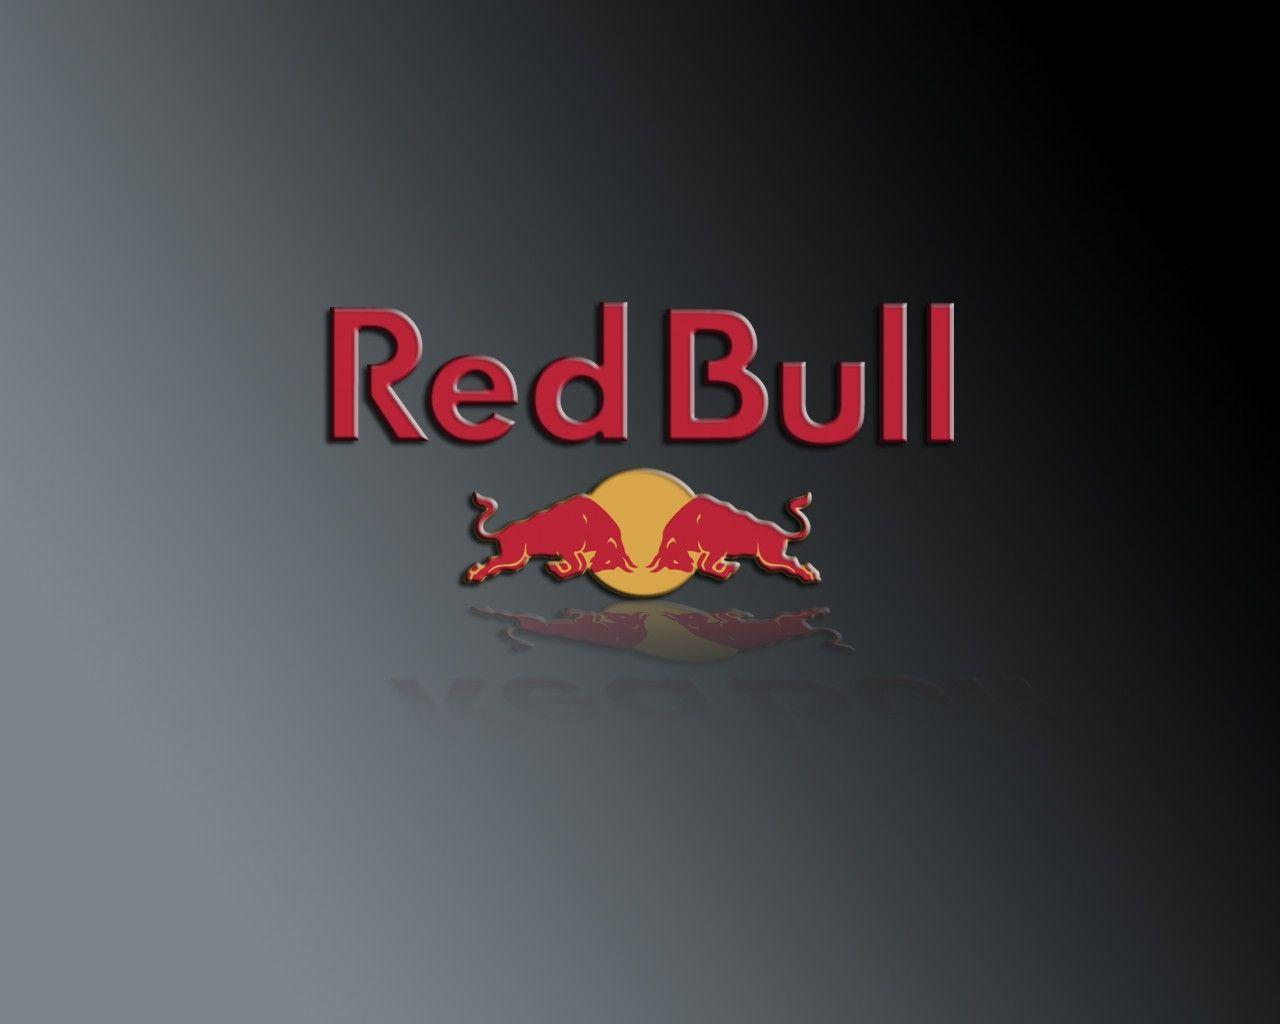 Red Bull Car Wallpaper Free Download · Red Bull Wallpaper. Best